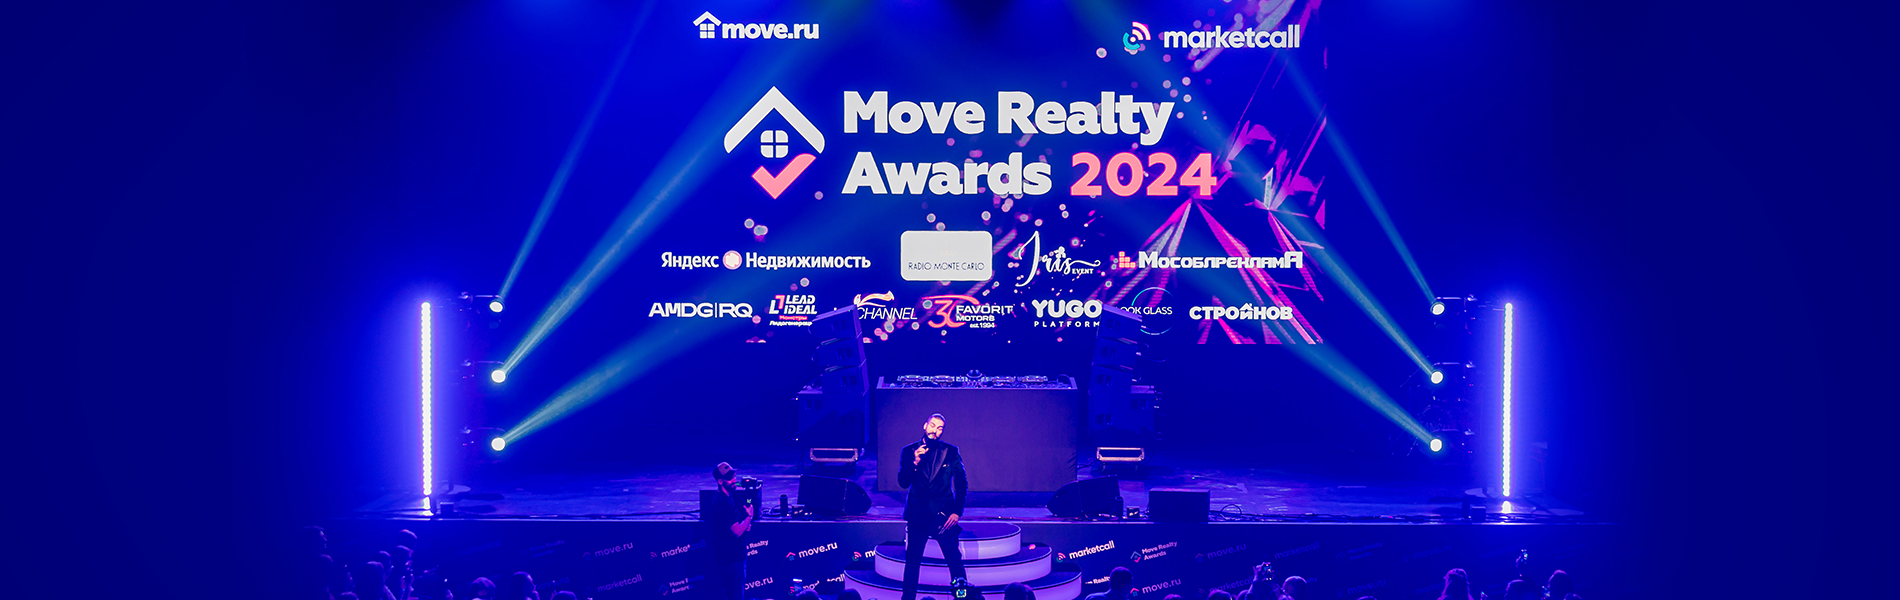 Move realty awards 2024: наградили лидеров по работе с репутацией в интернете